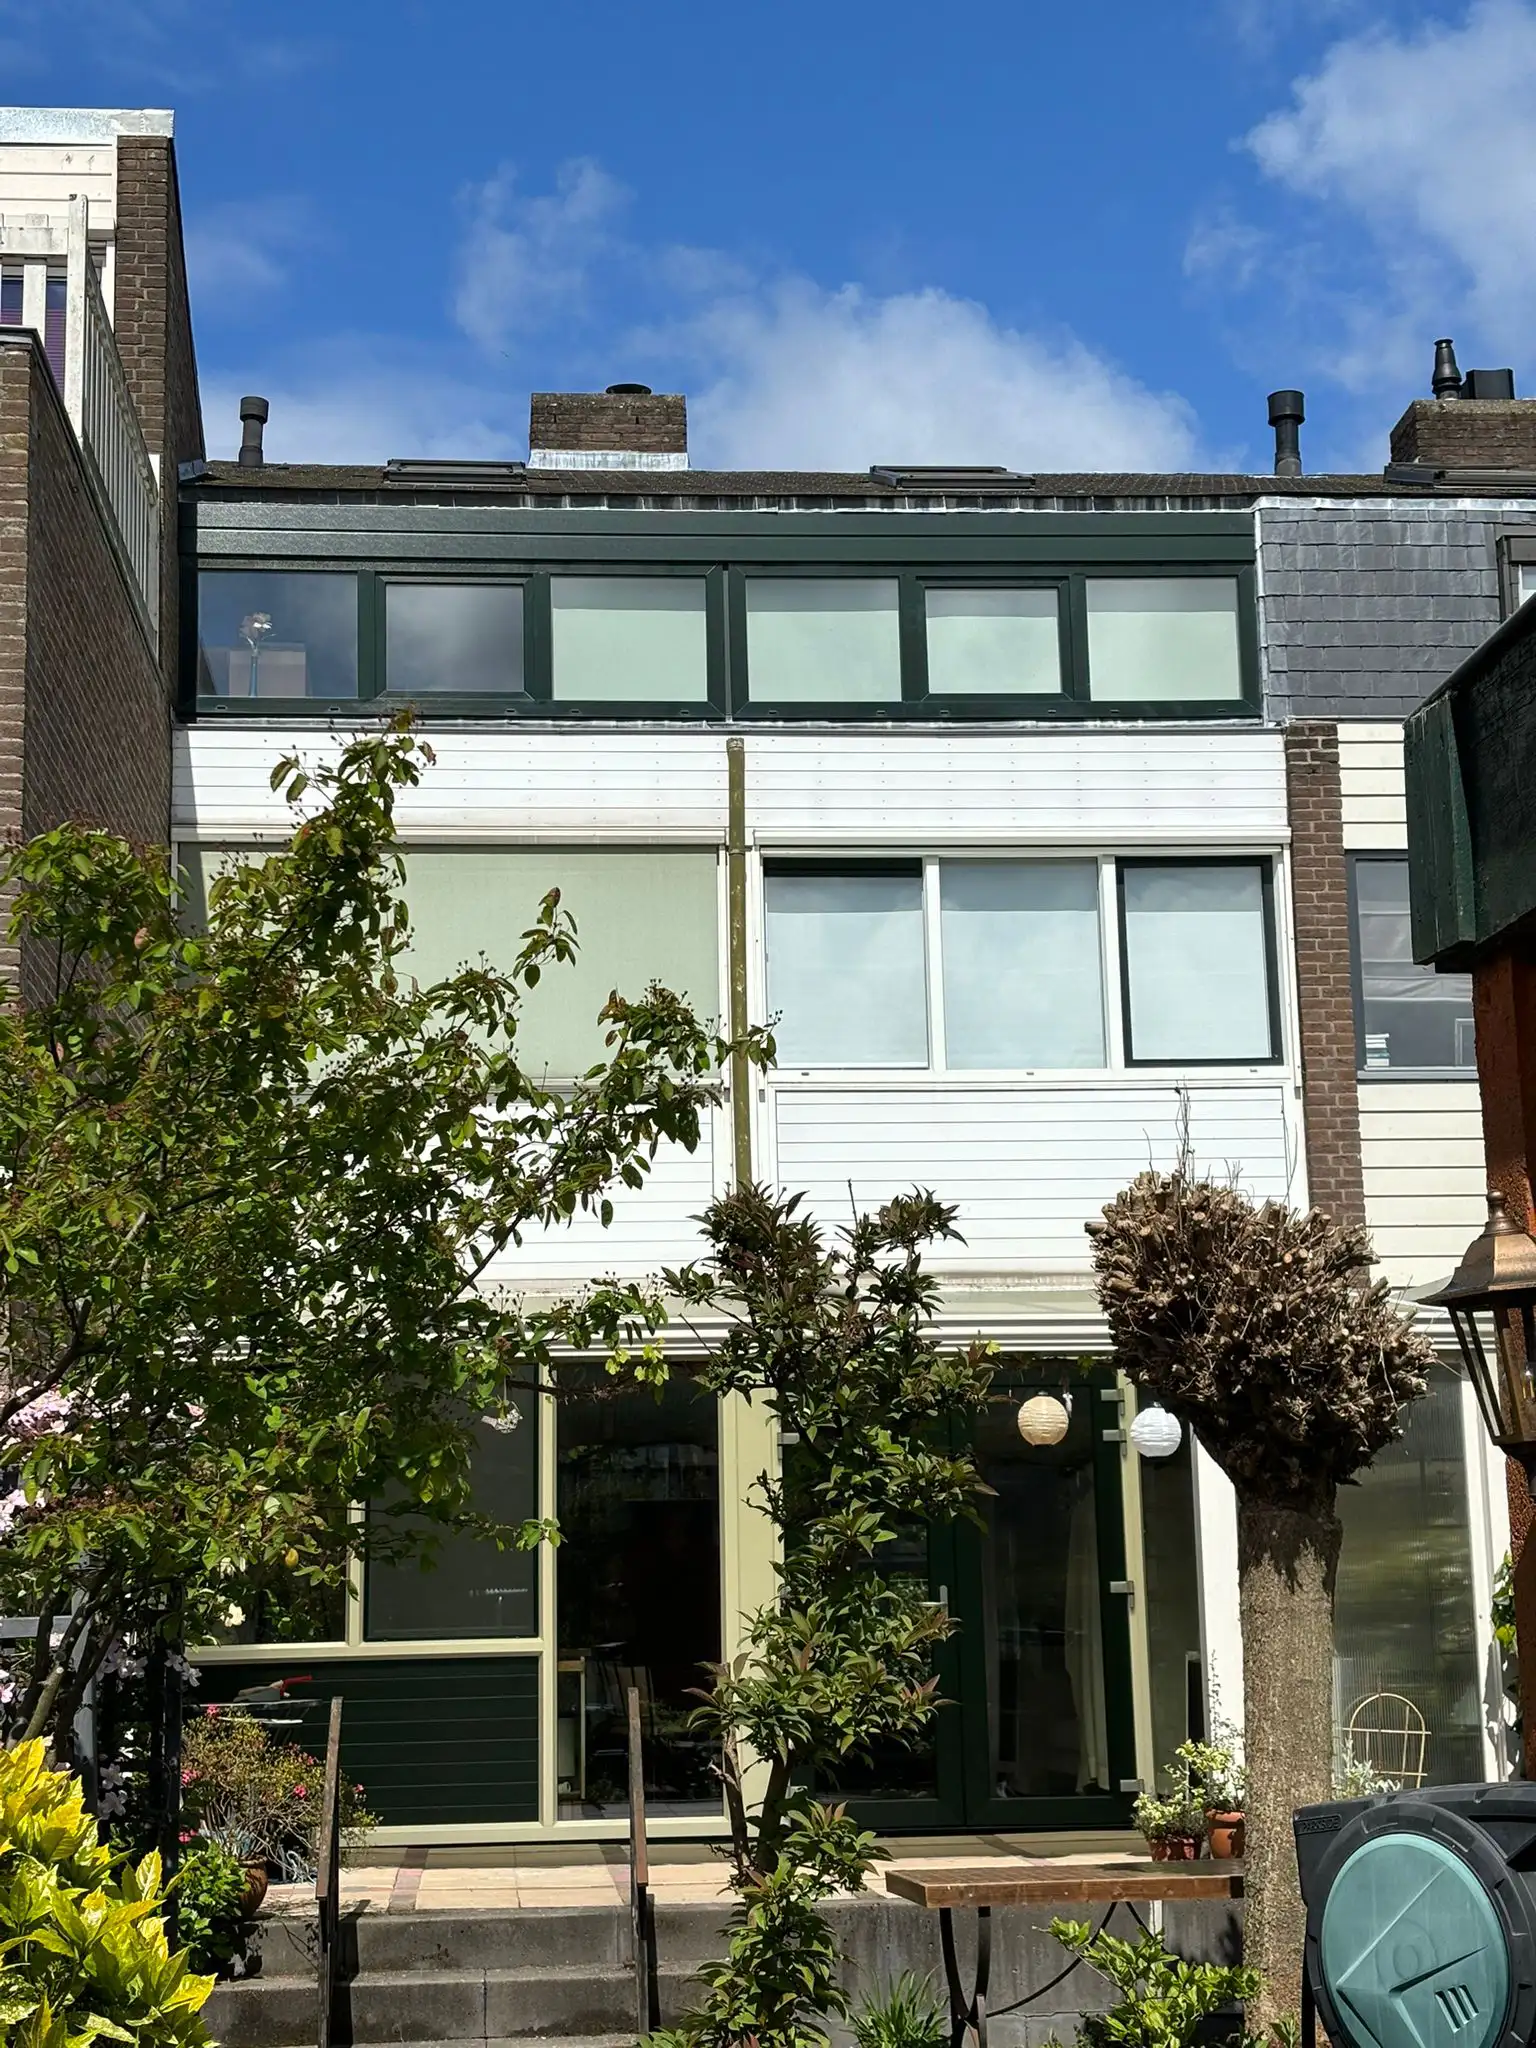 Woning in Wassenaar voorzien van Kunststof kozijnen in wit & groen - AMPA kunststof kozijnen.